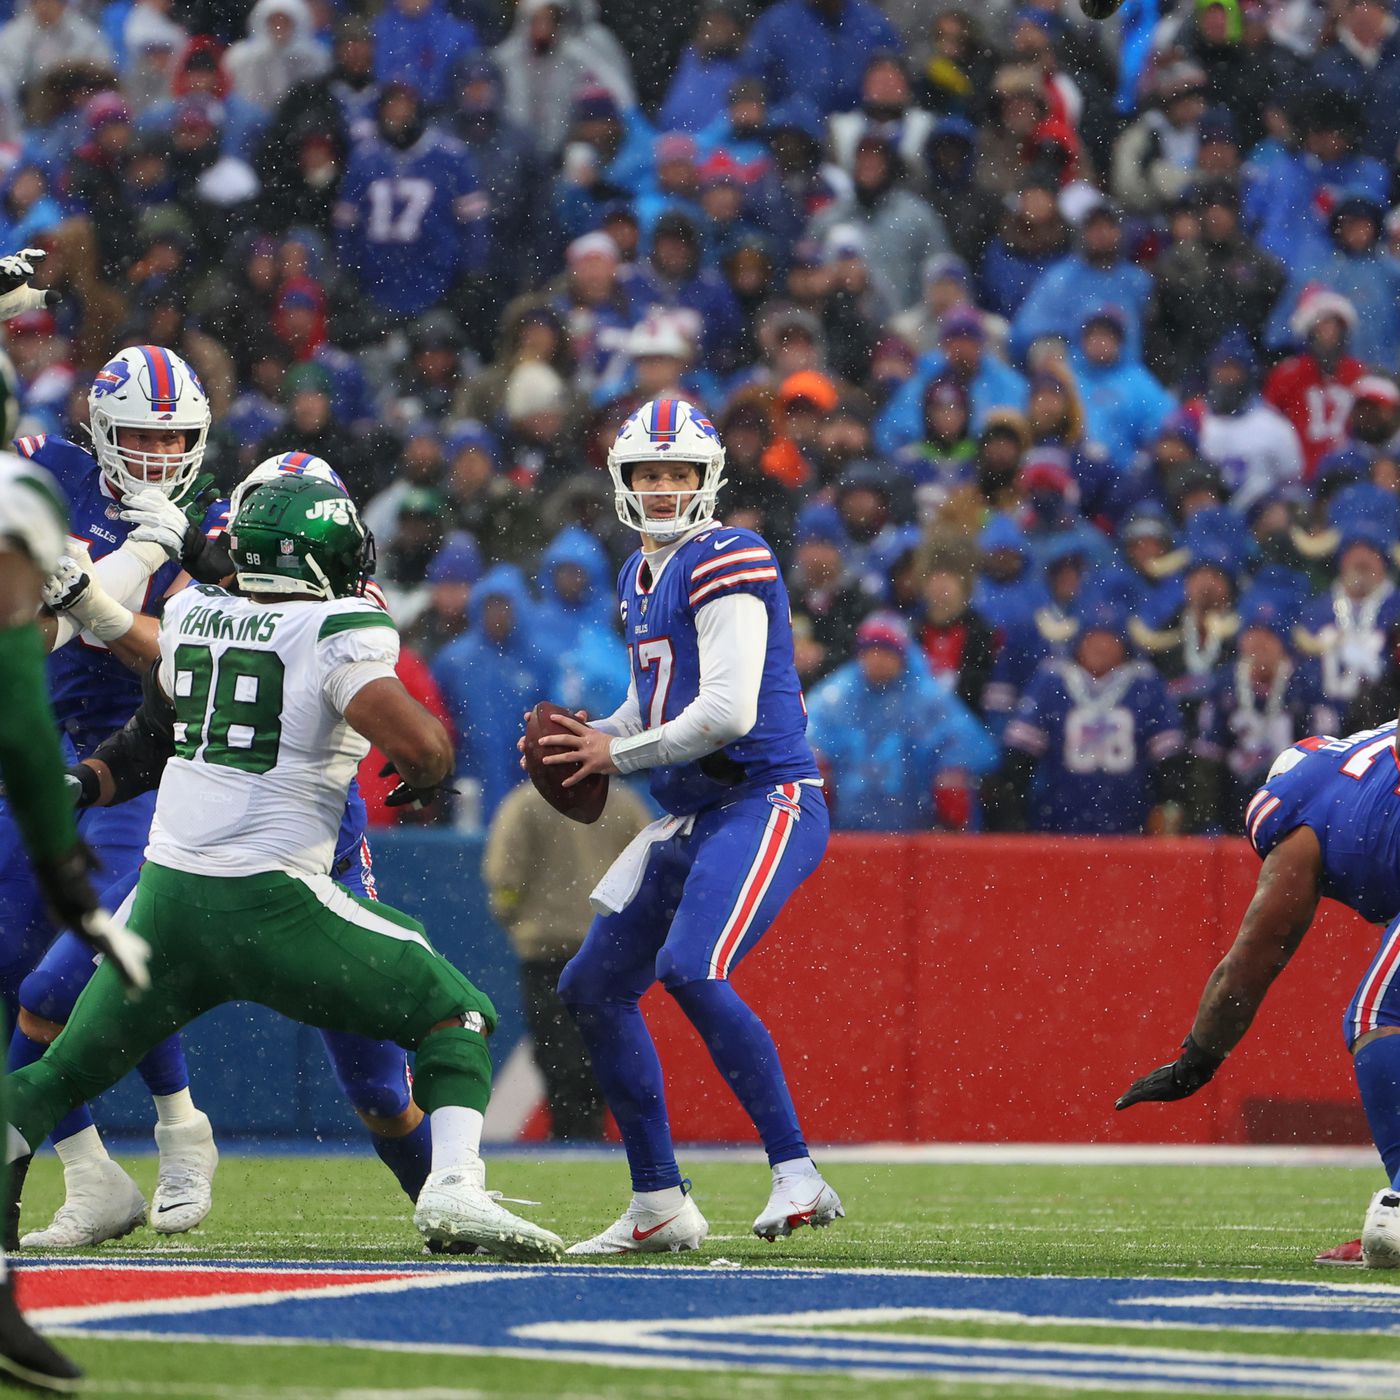 NFL Week 1 odds: Bills slight favourites over Jets on MNF